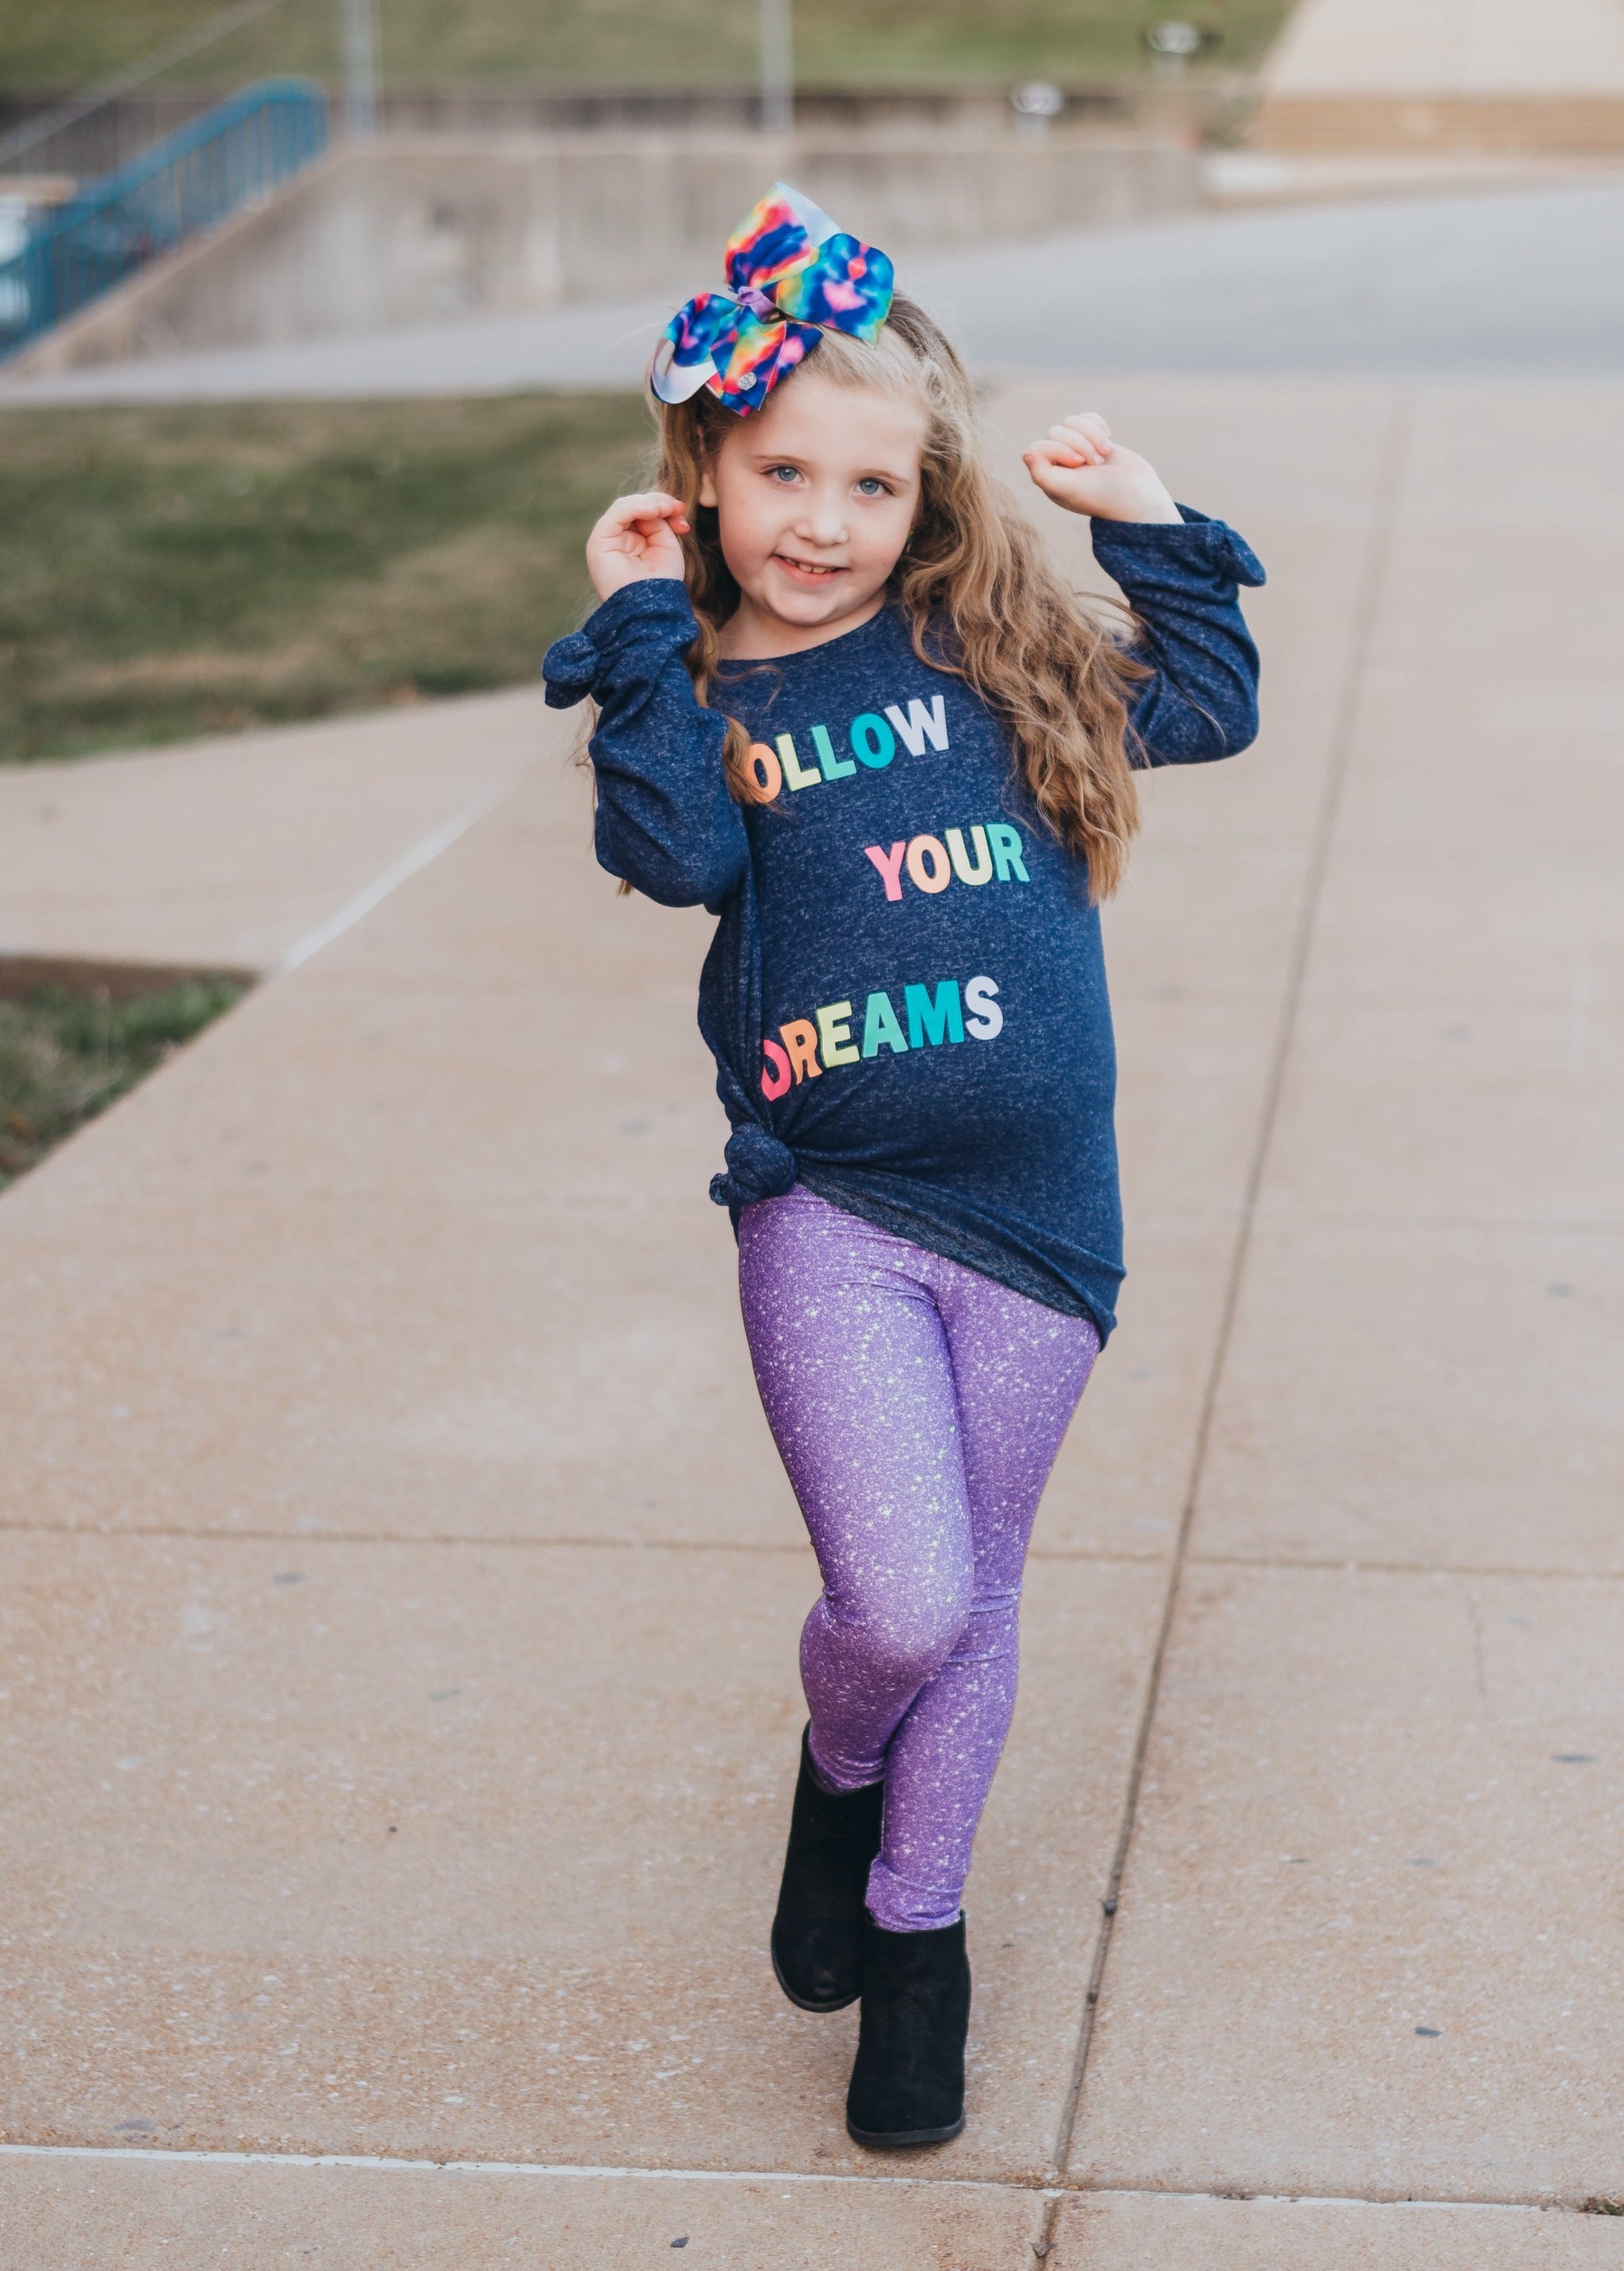 Shimmer flared leggings - Sets - CLOTHING - Girl - Kids 